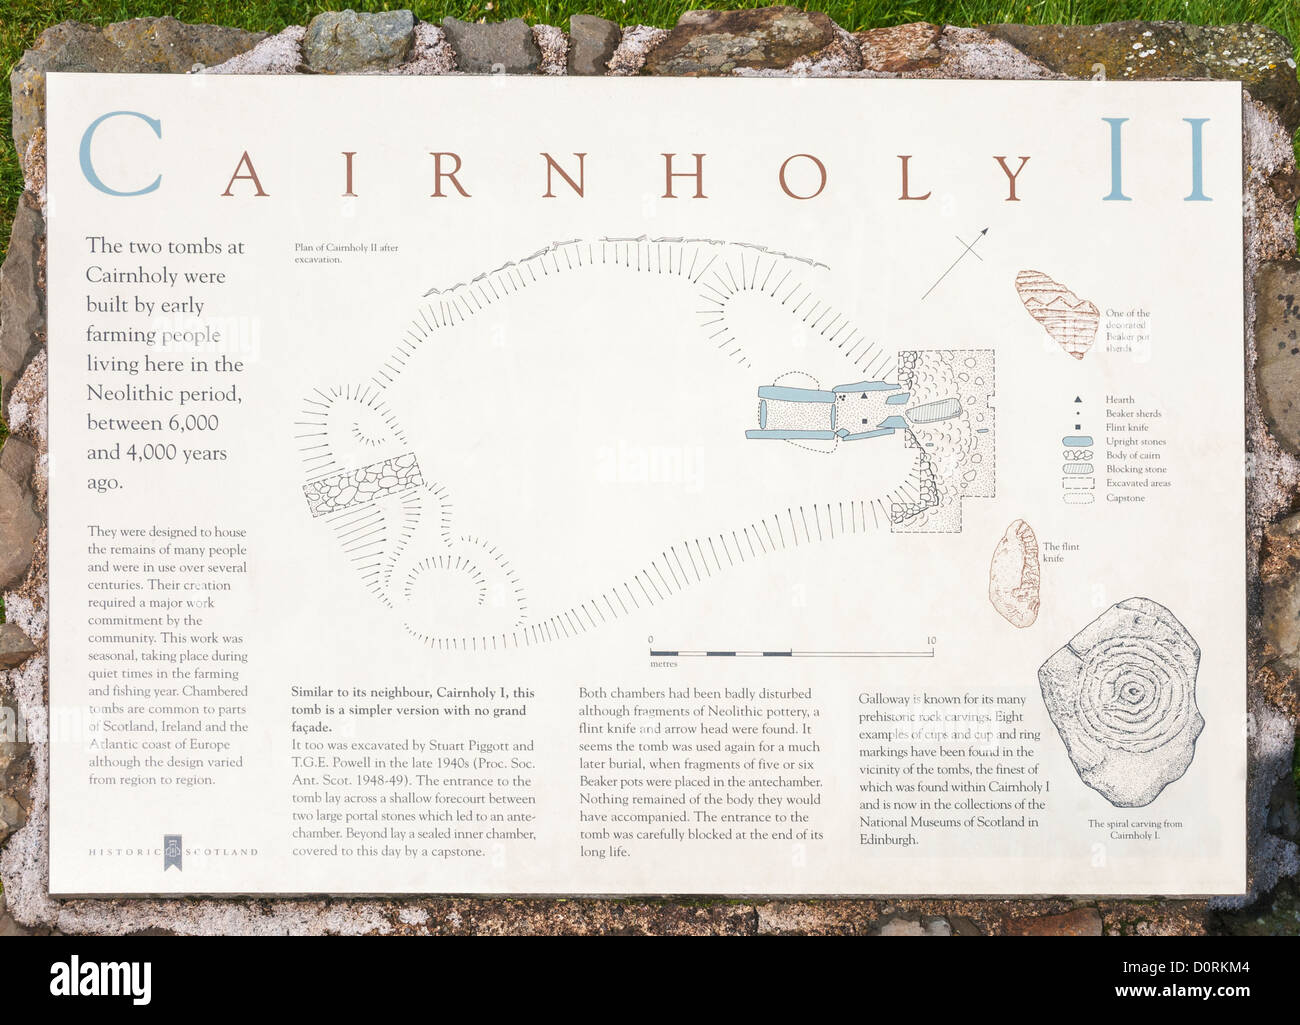 La Scozia, Creetown vacinity, Cairn Santo II, neolitico sepoltura chambered cairn, informazioni registrazione Foto Stock